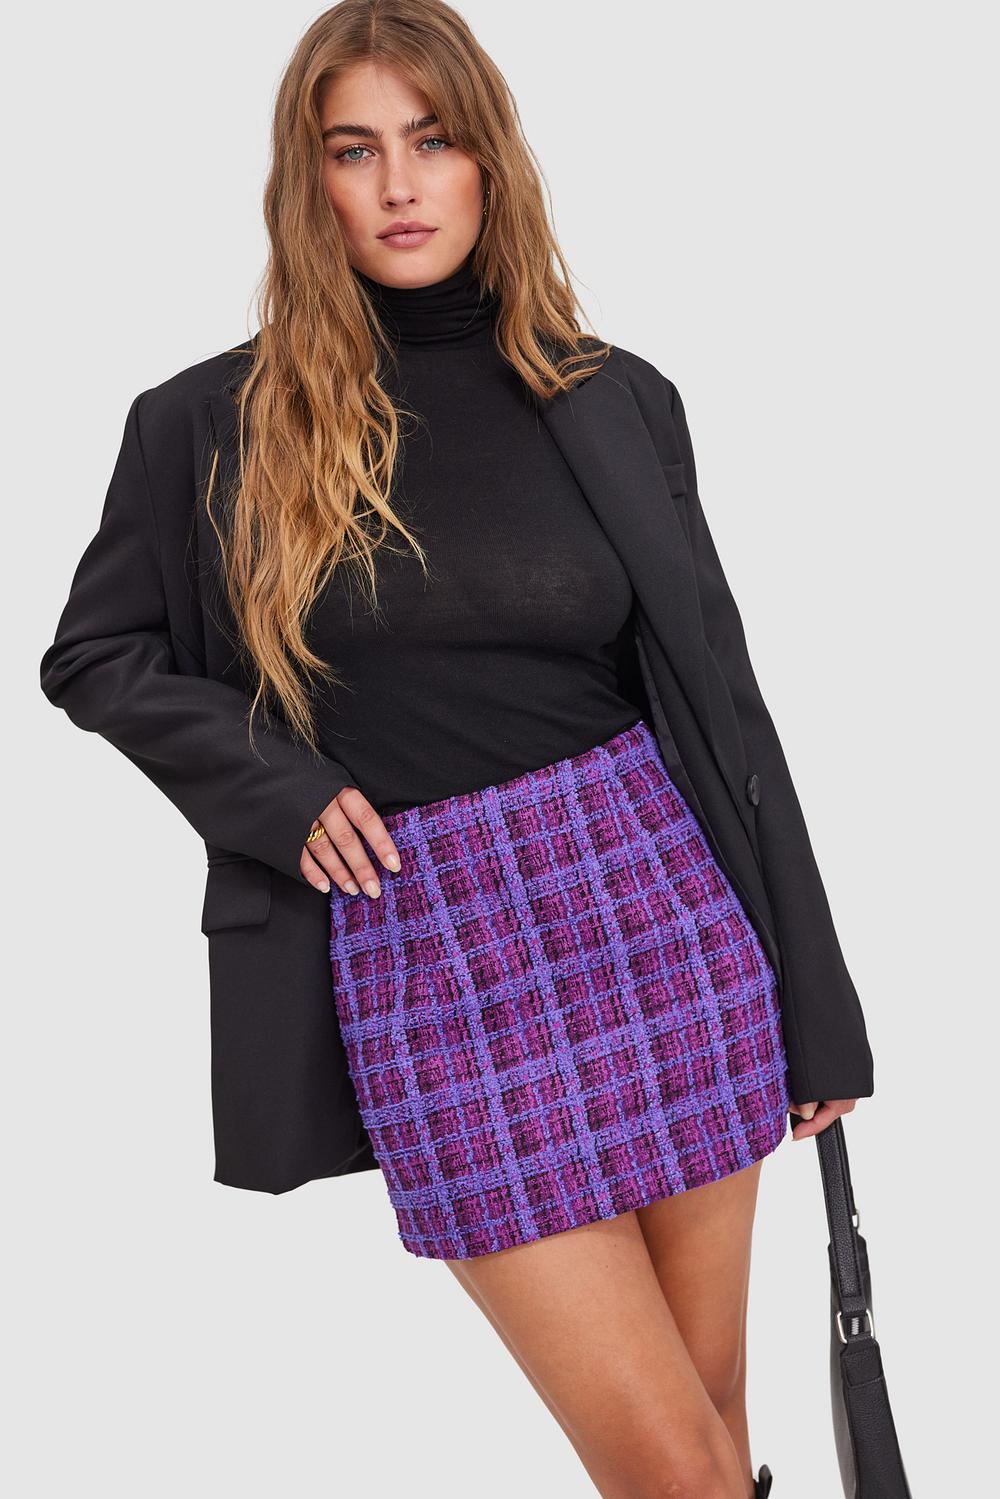 Purple mini skirt